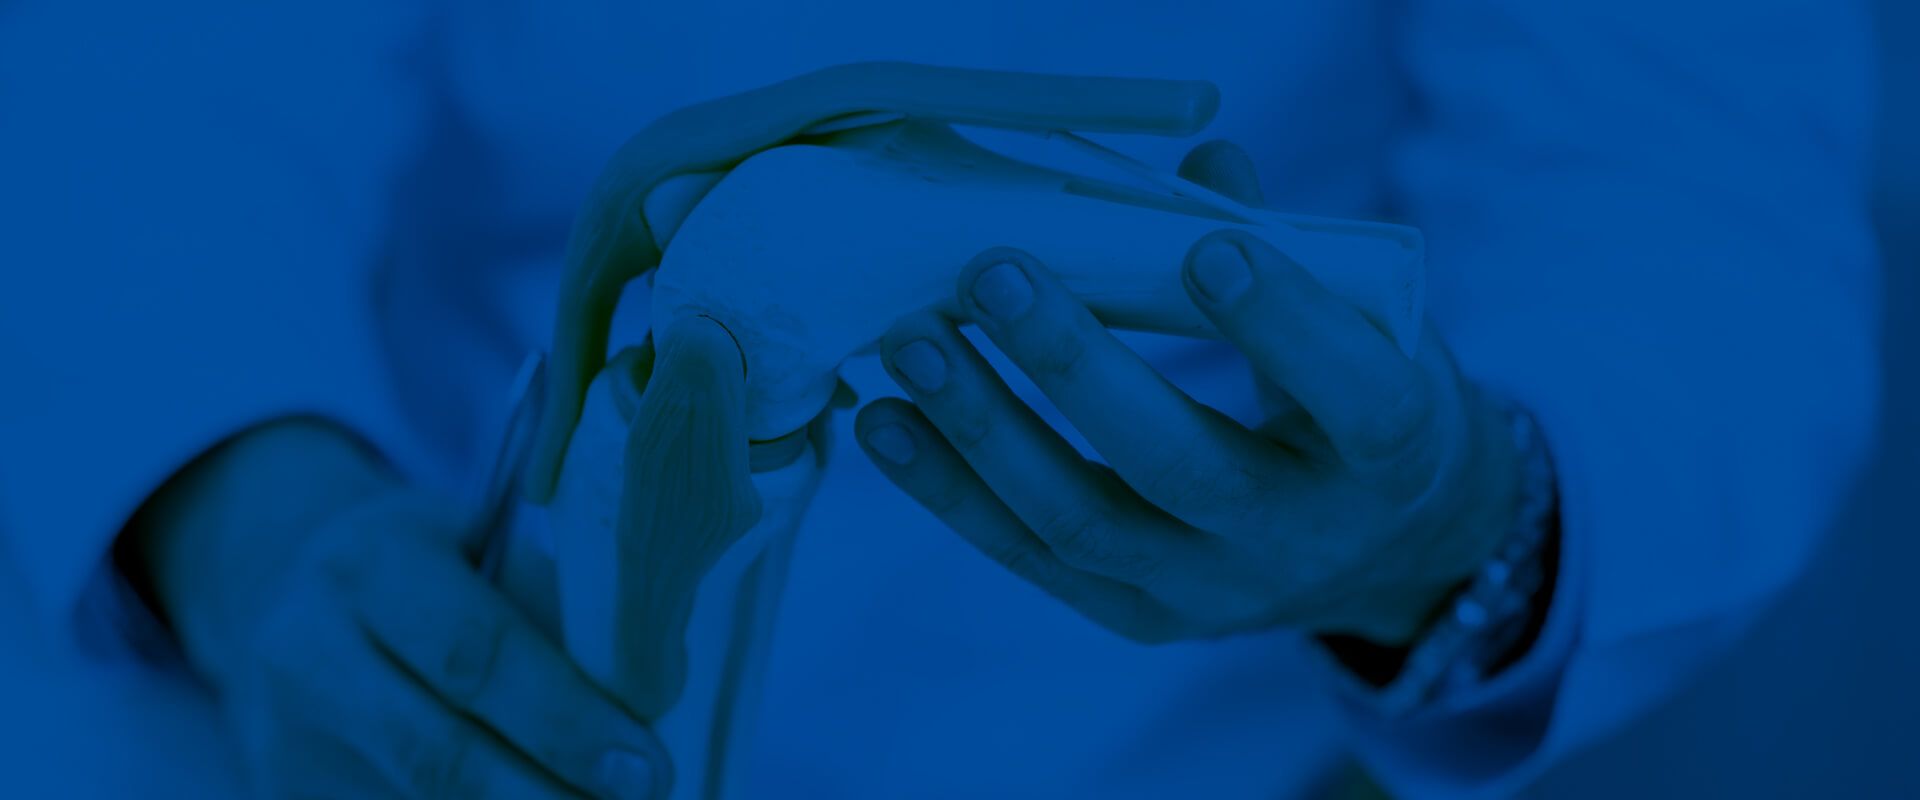 Modell eines Gelenks, das von einer Person mit Arztkittel in den Händen gehalten wird